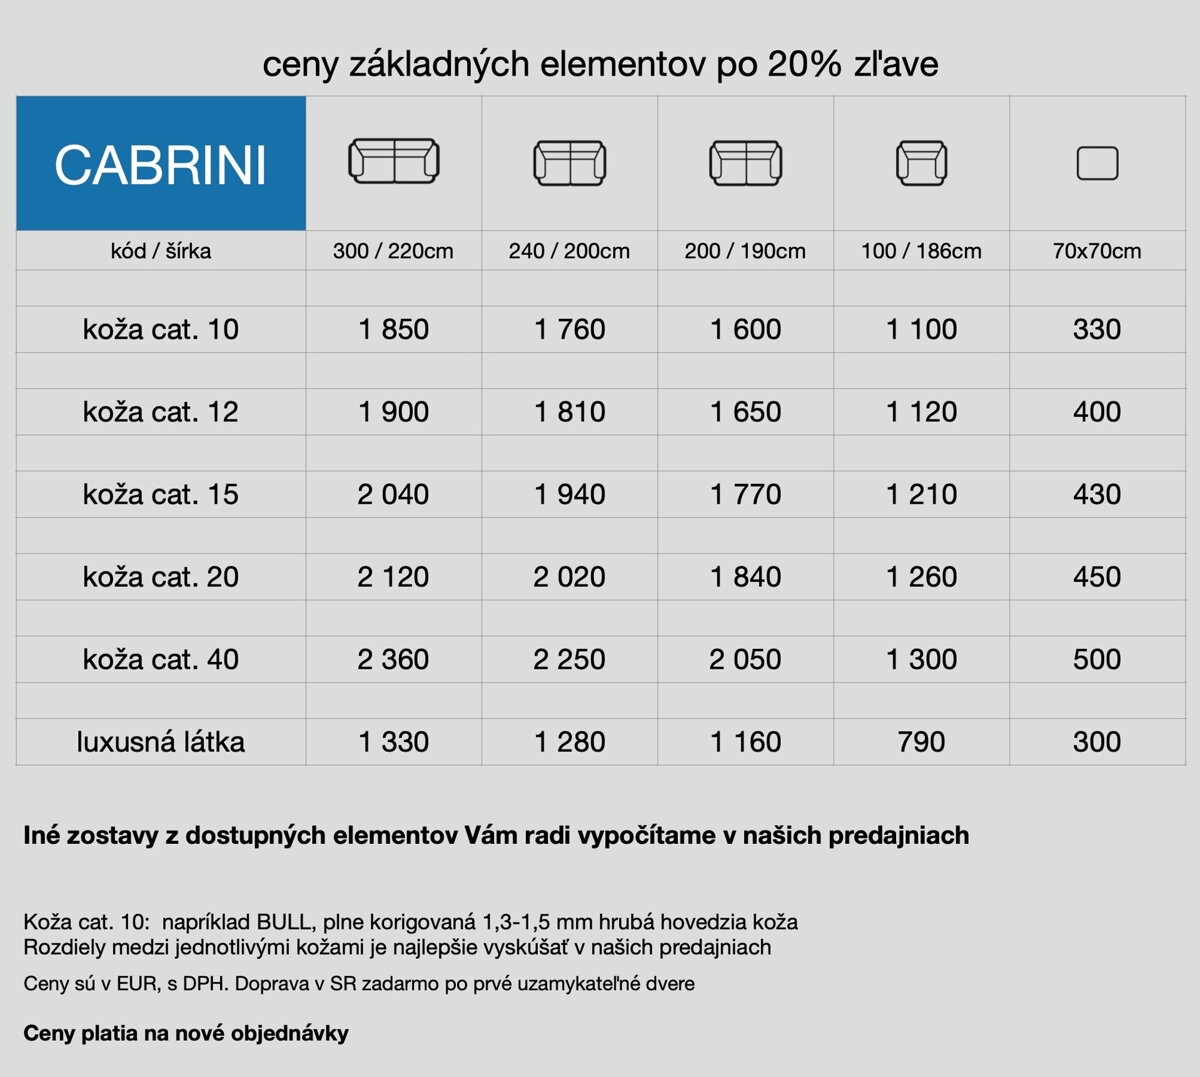 cennik vysoké sedačky Cabrini 